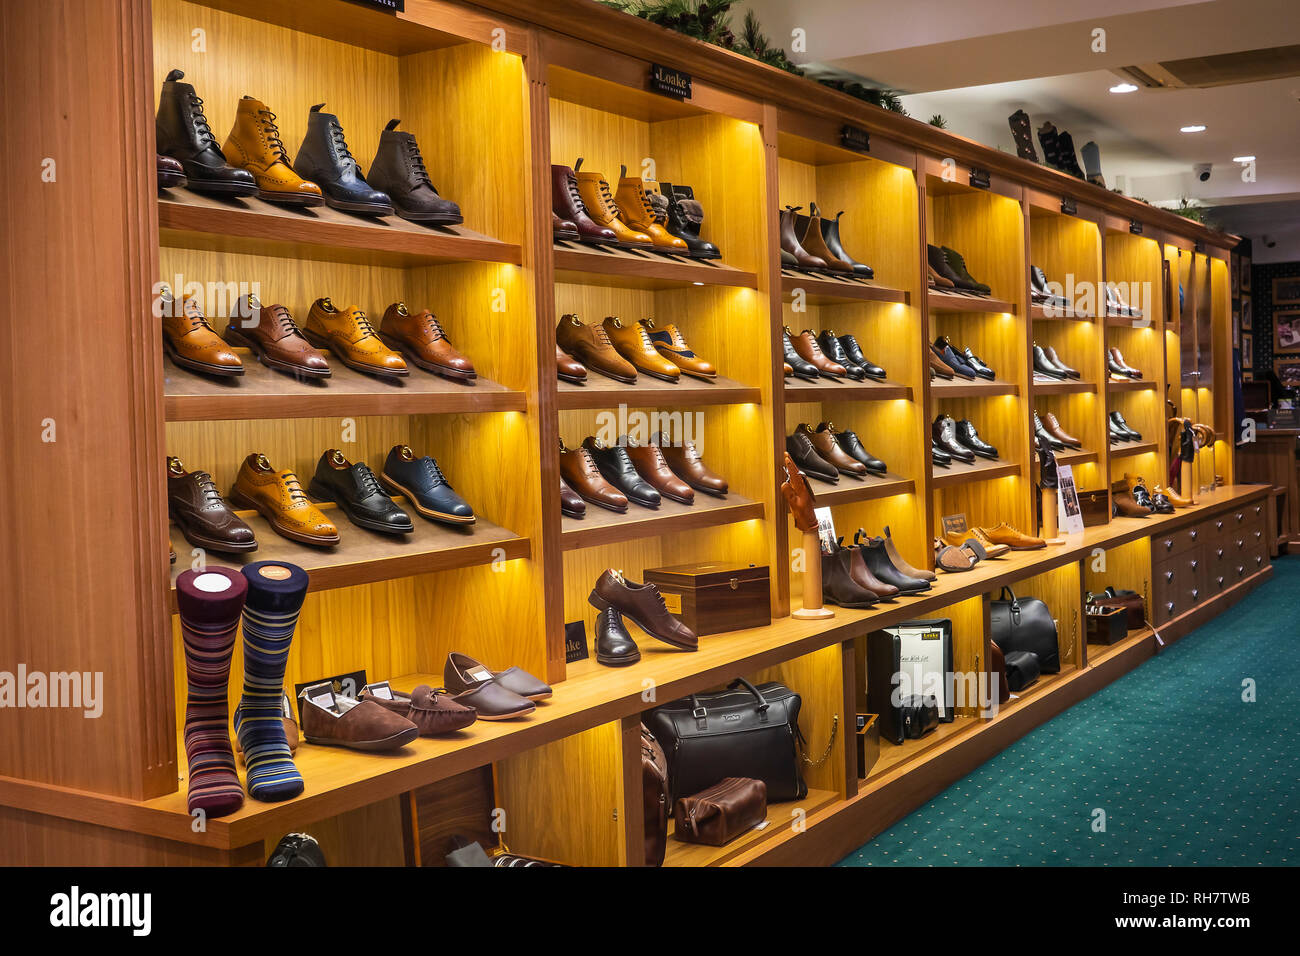 Loake, Schuhe, Schuhe, Schuhe, Herren, Damen, Display, Store, Shop Stockfoto